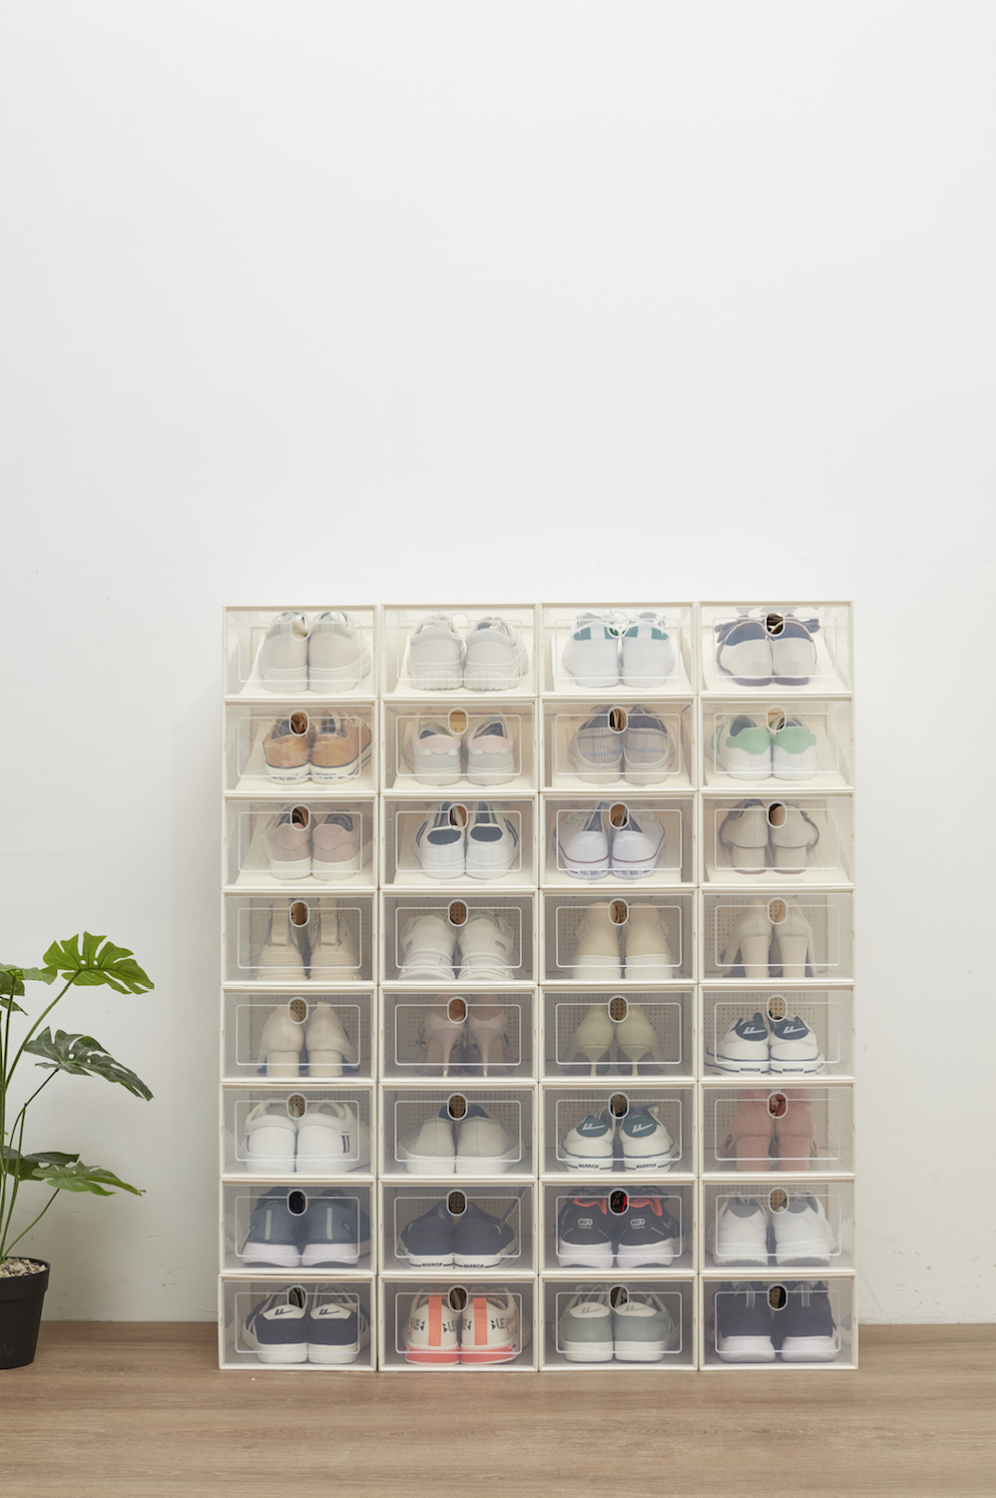 Cajas de Zapatos Cajas para Zapatos de Plástico Apilables y Plegables  Organizador de Almacenamiento de Guardarropa, con Tapa Frontal,  Transparente